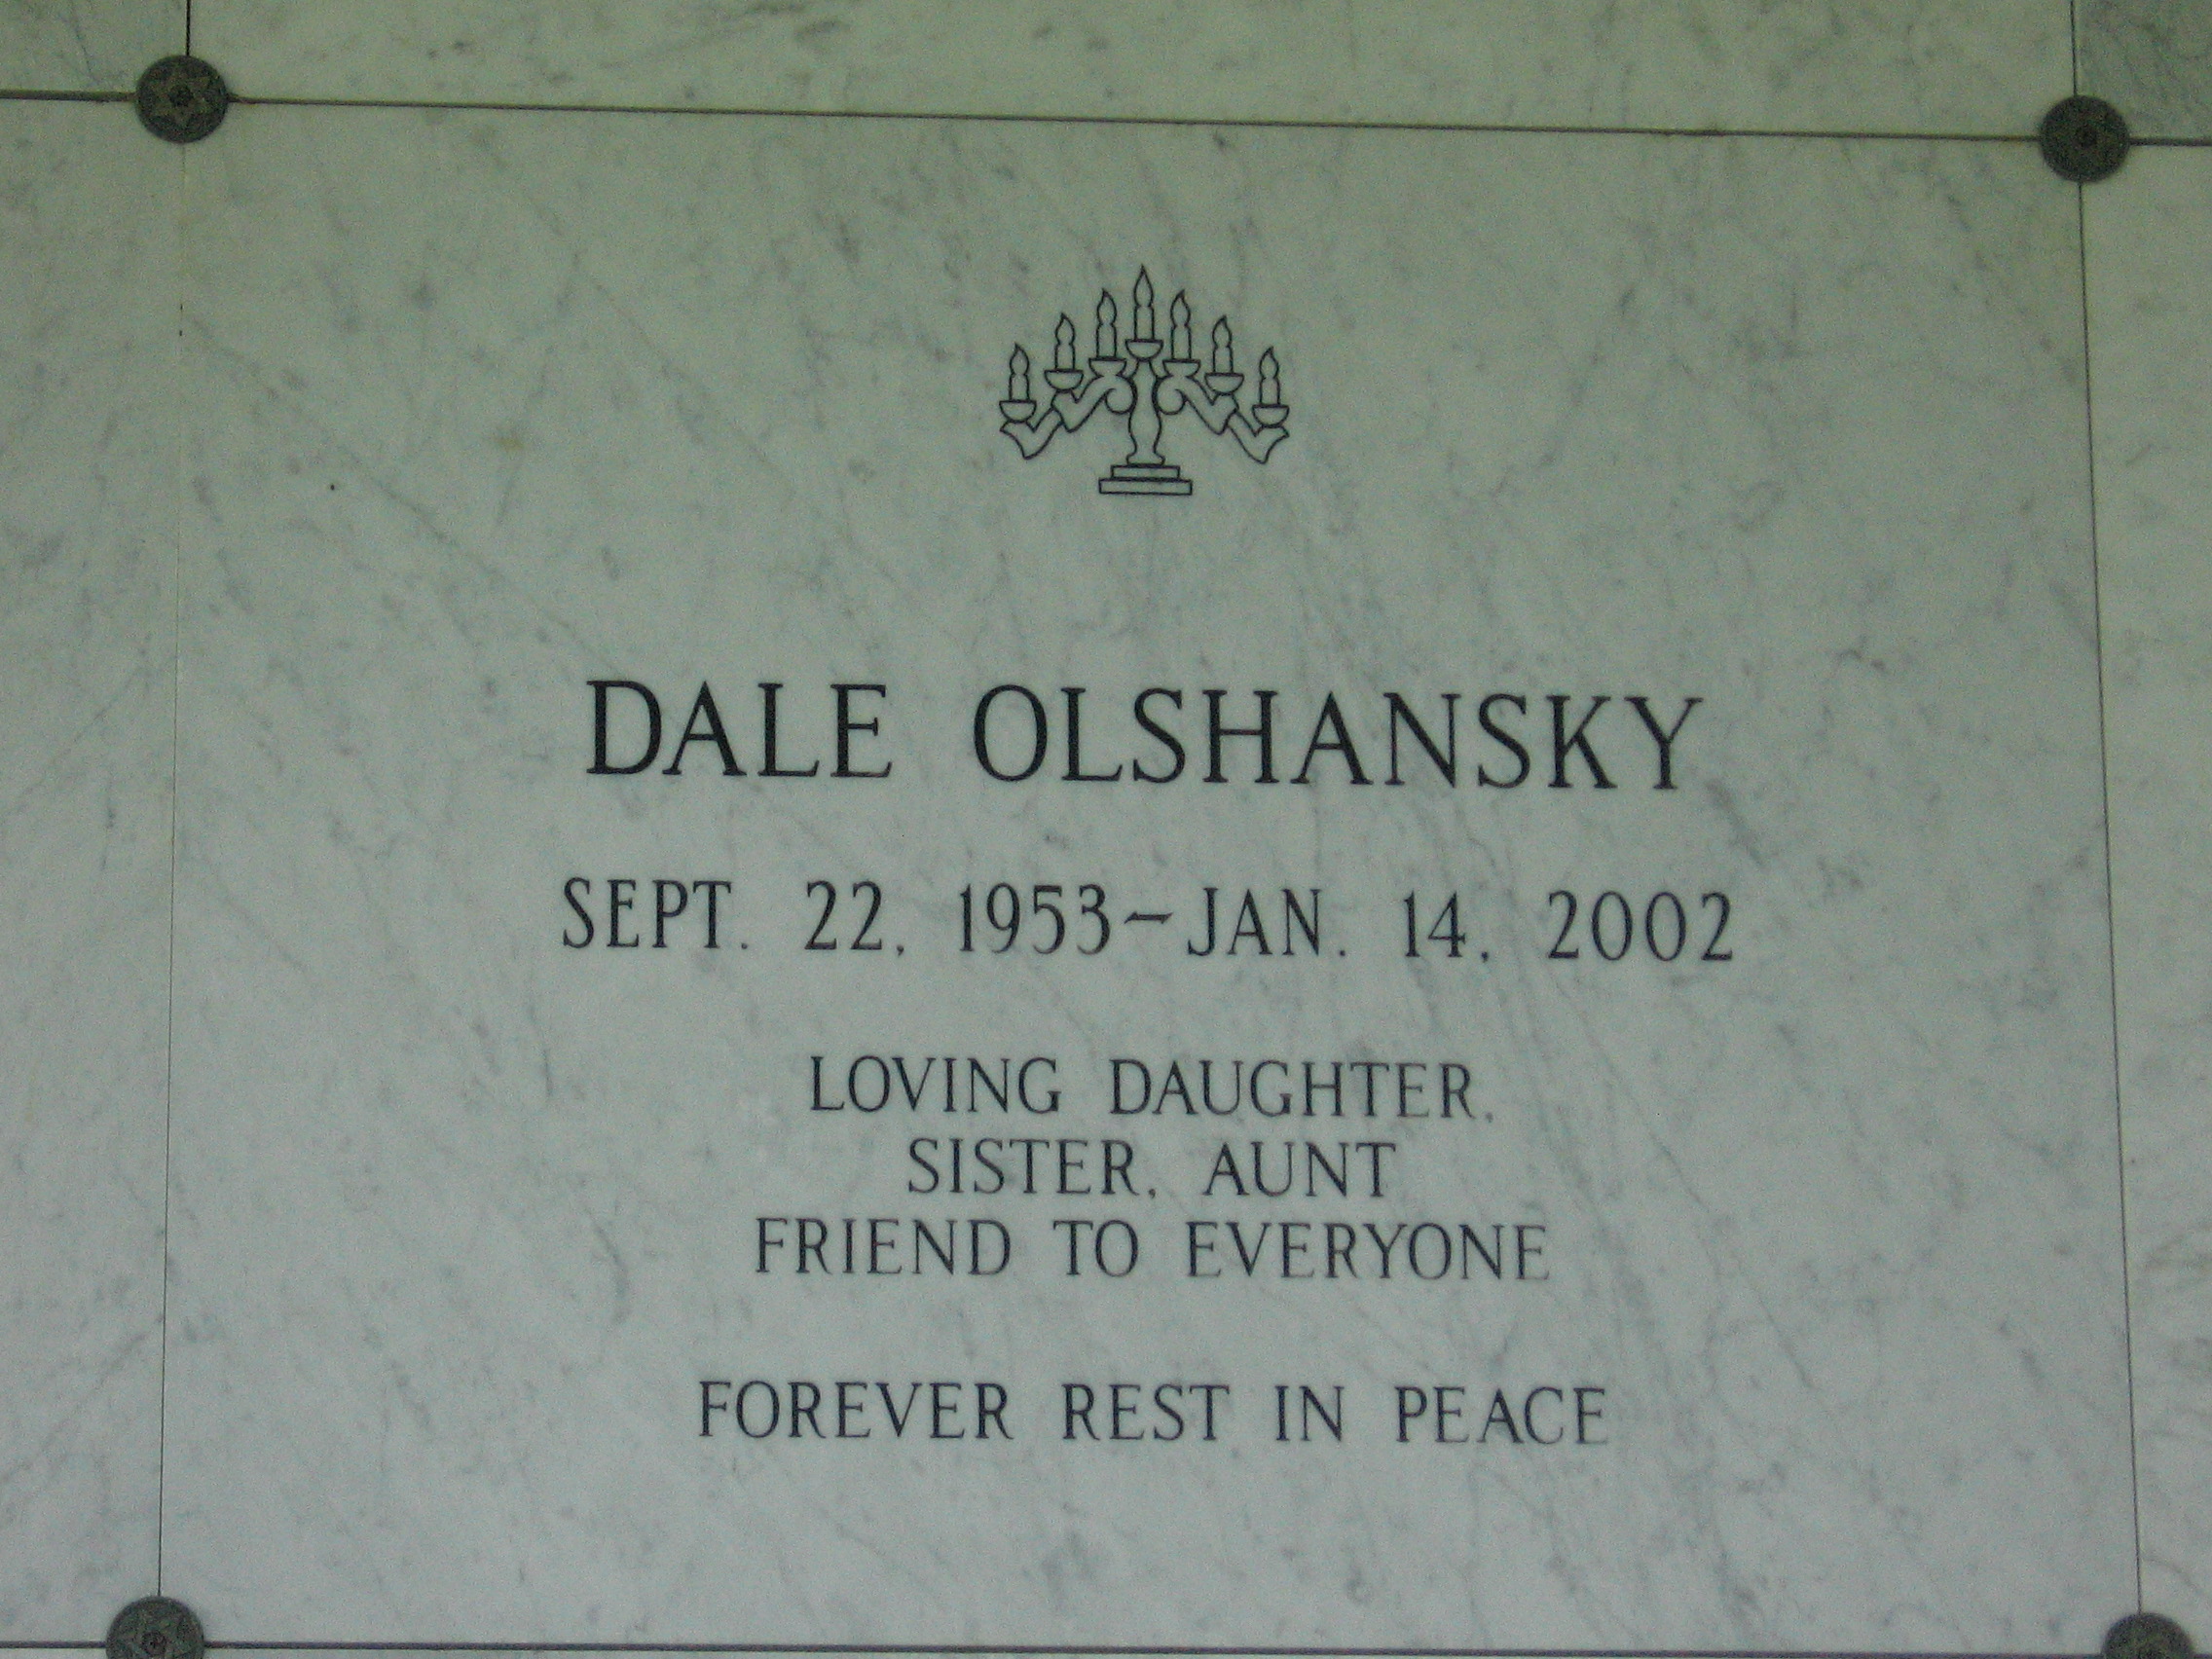 Dale Olshansky